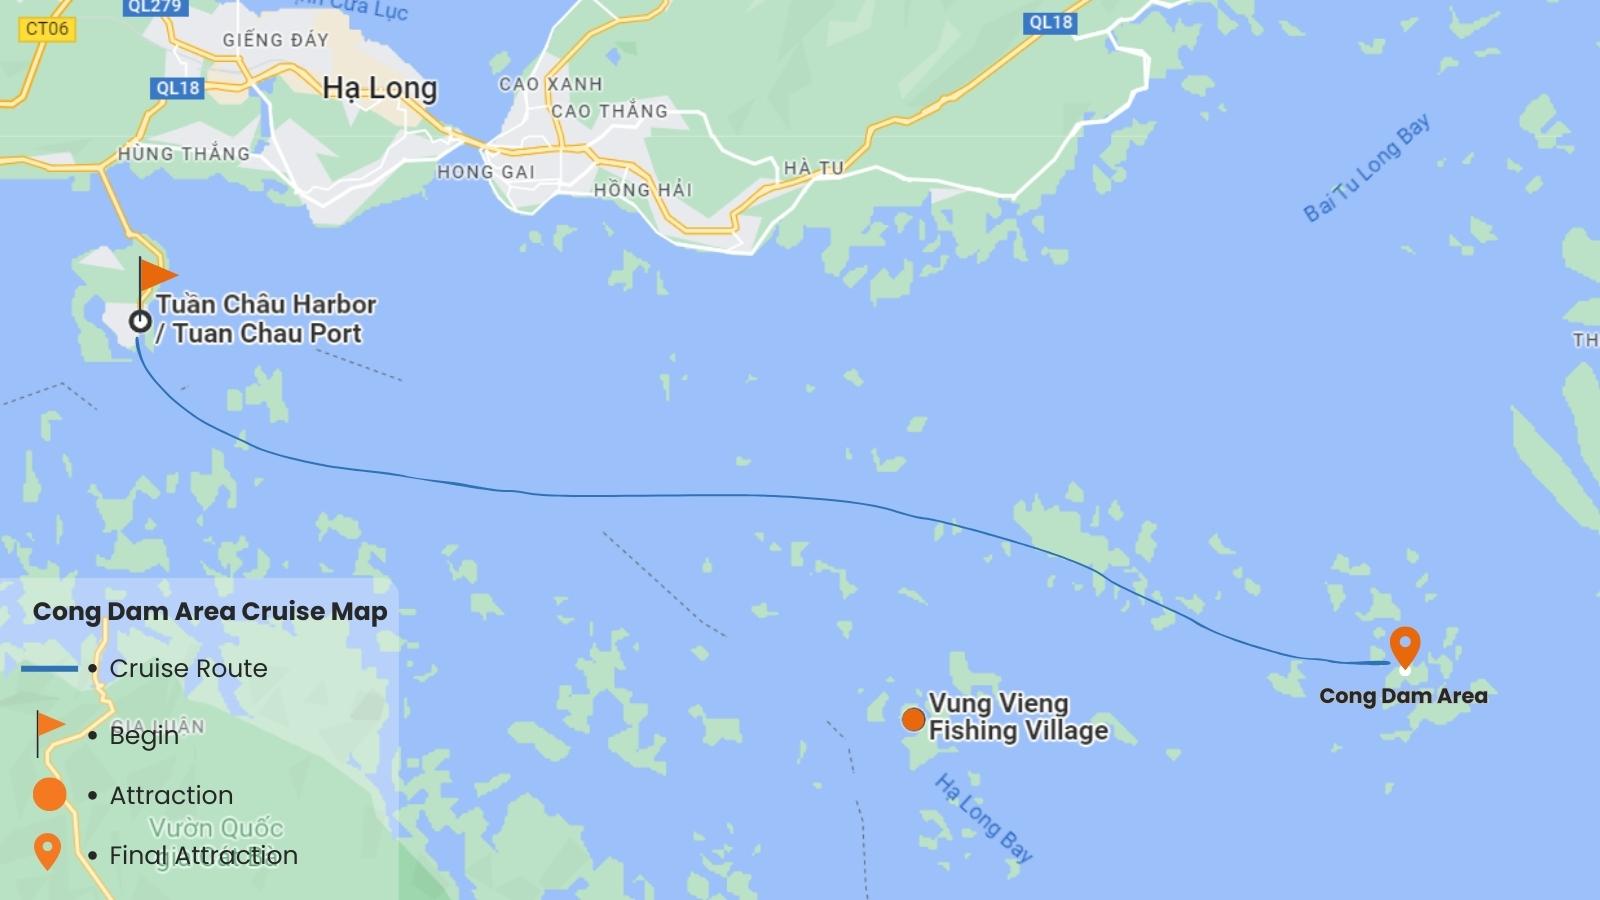 Cong Dam Area Cruise Map